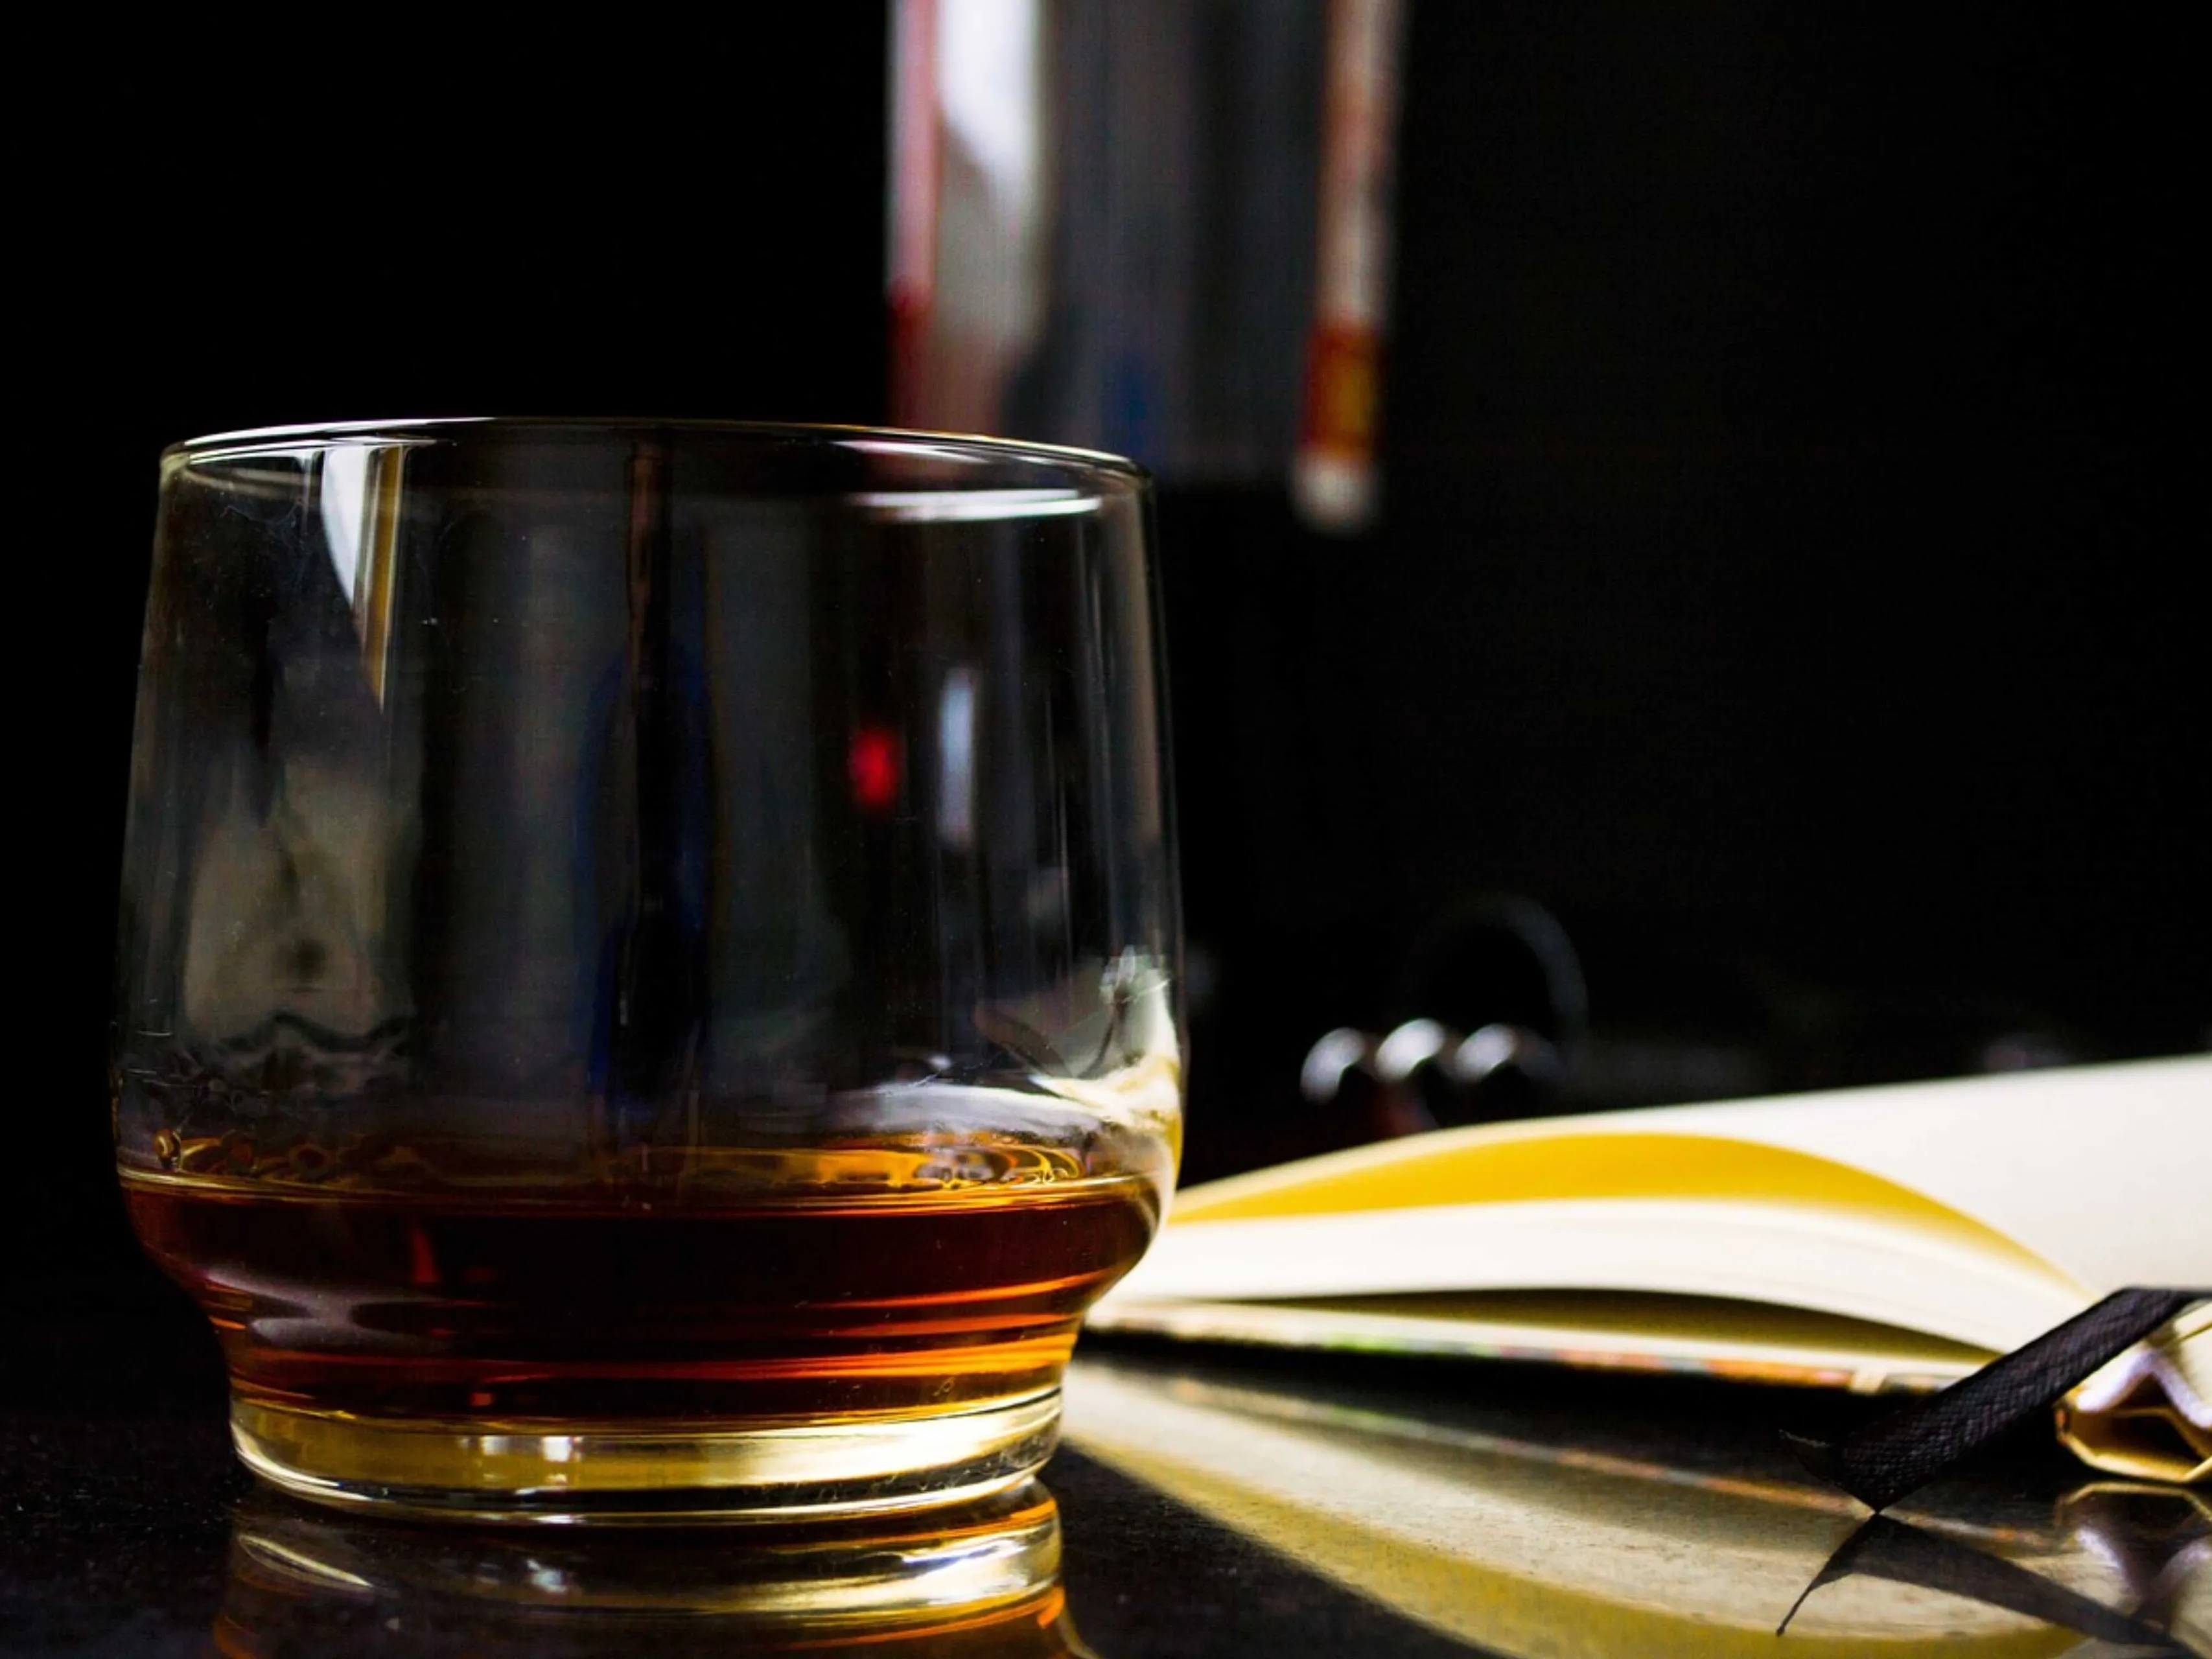 whisky glasboek